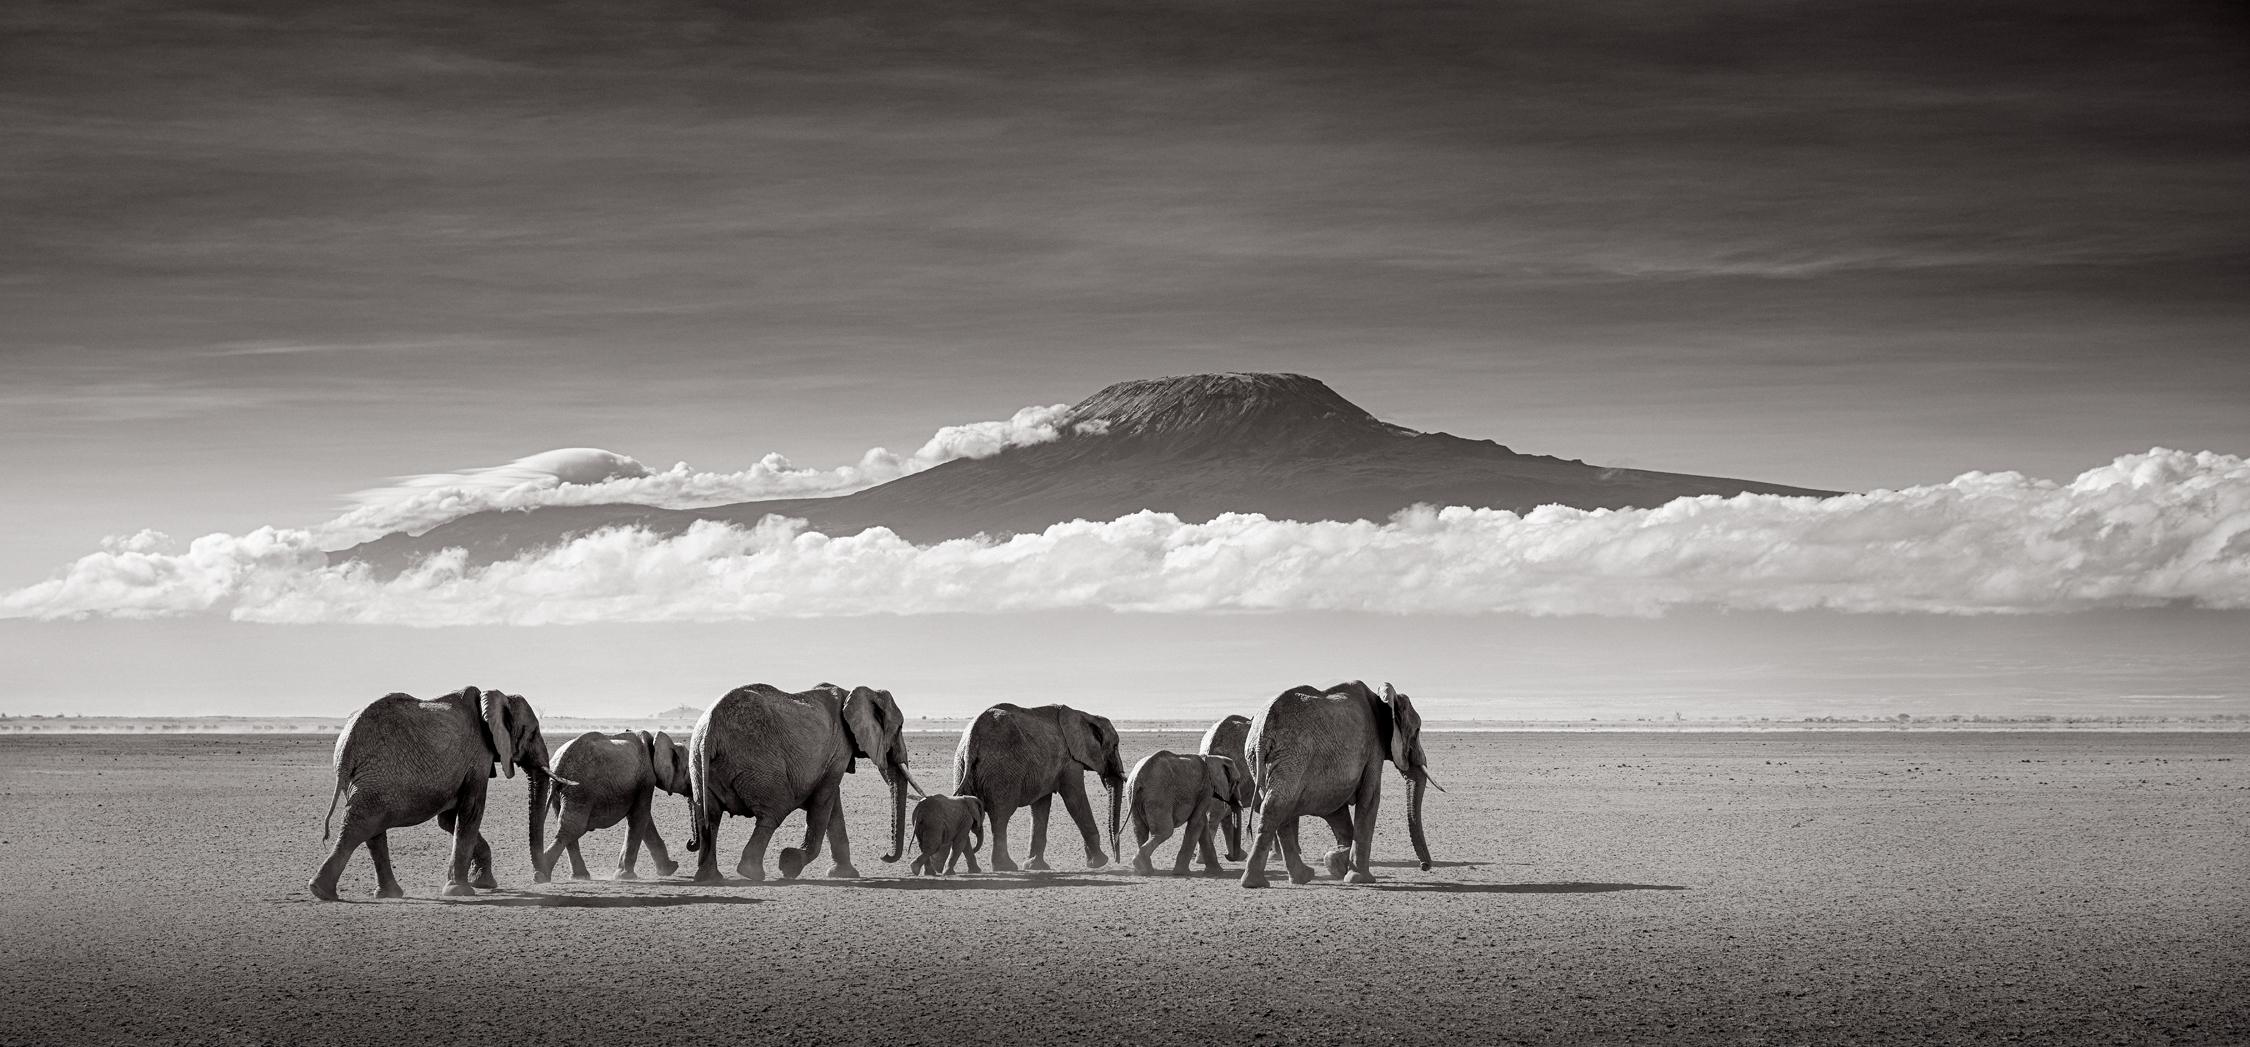 Drew Doggett Black and White Photograph – Elefanten beim Wandern durchs trockenes Seebett mit Mount Kilimanjaro als Hintergrund